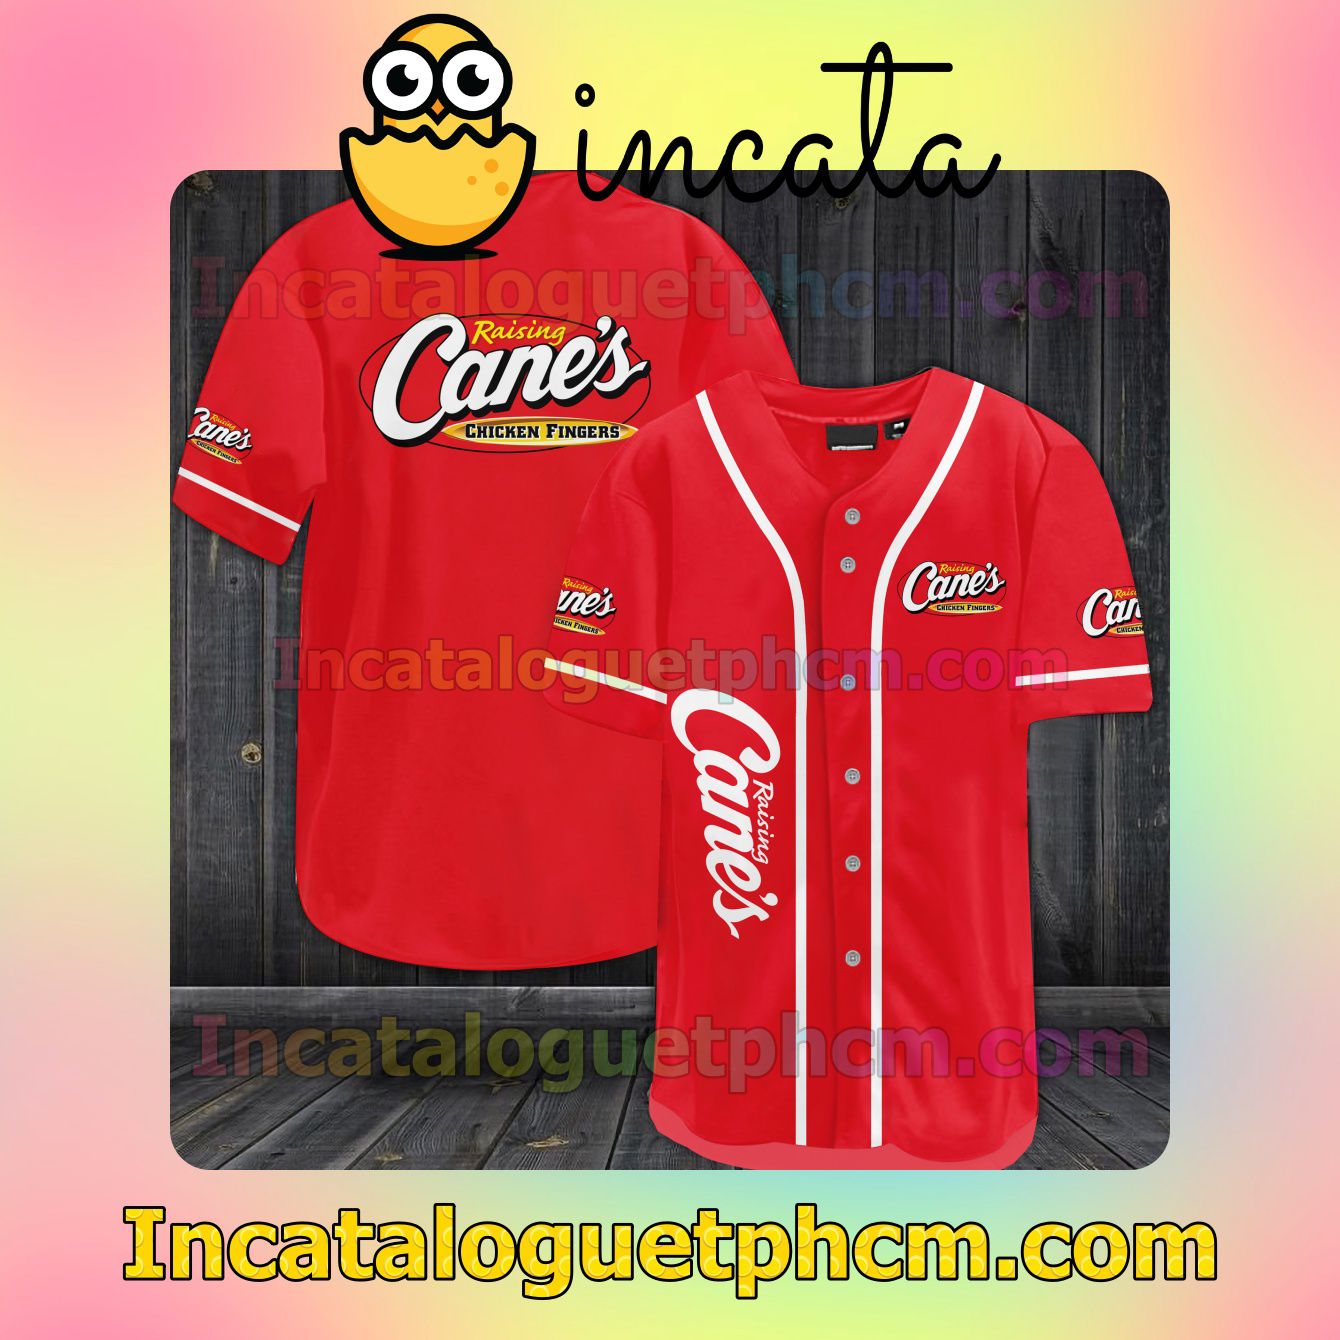 Raising Cane's Chicken Fingers Baseball Jersey Shirt